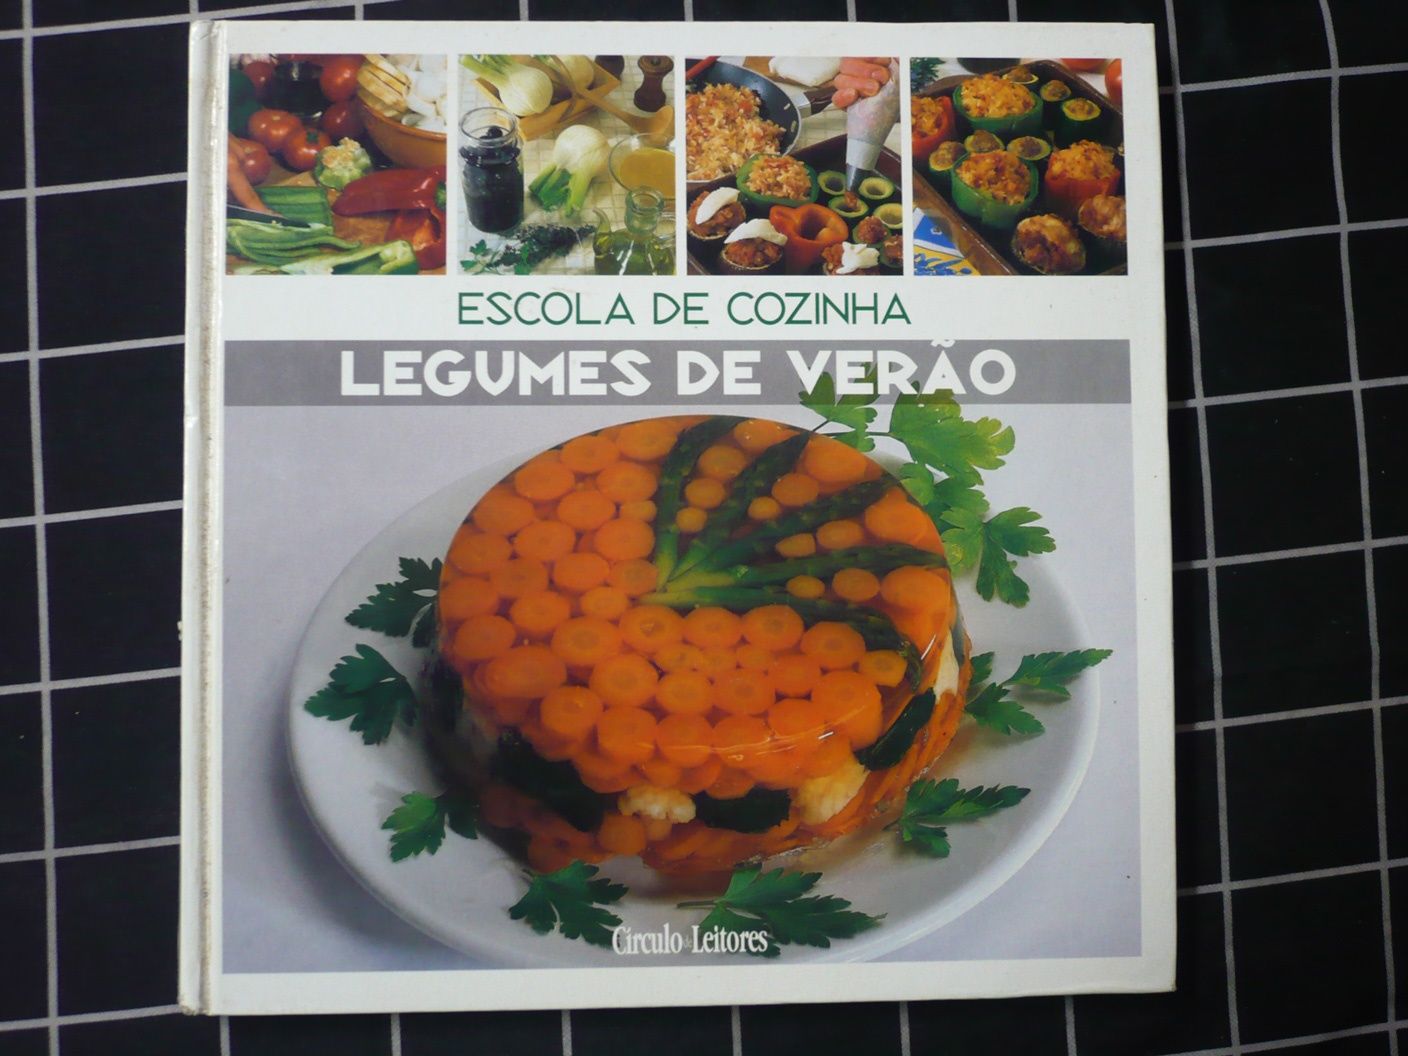 "Escola de cozinha - Legumes de Verão" (Stéphane Laborde)